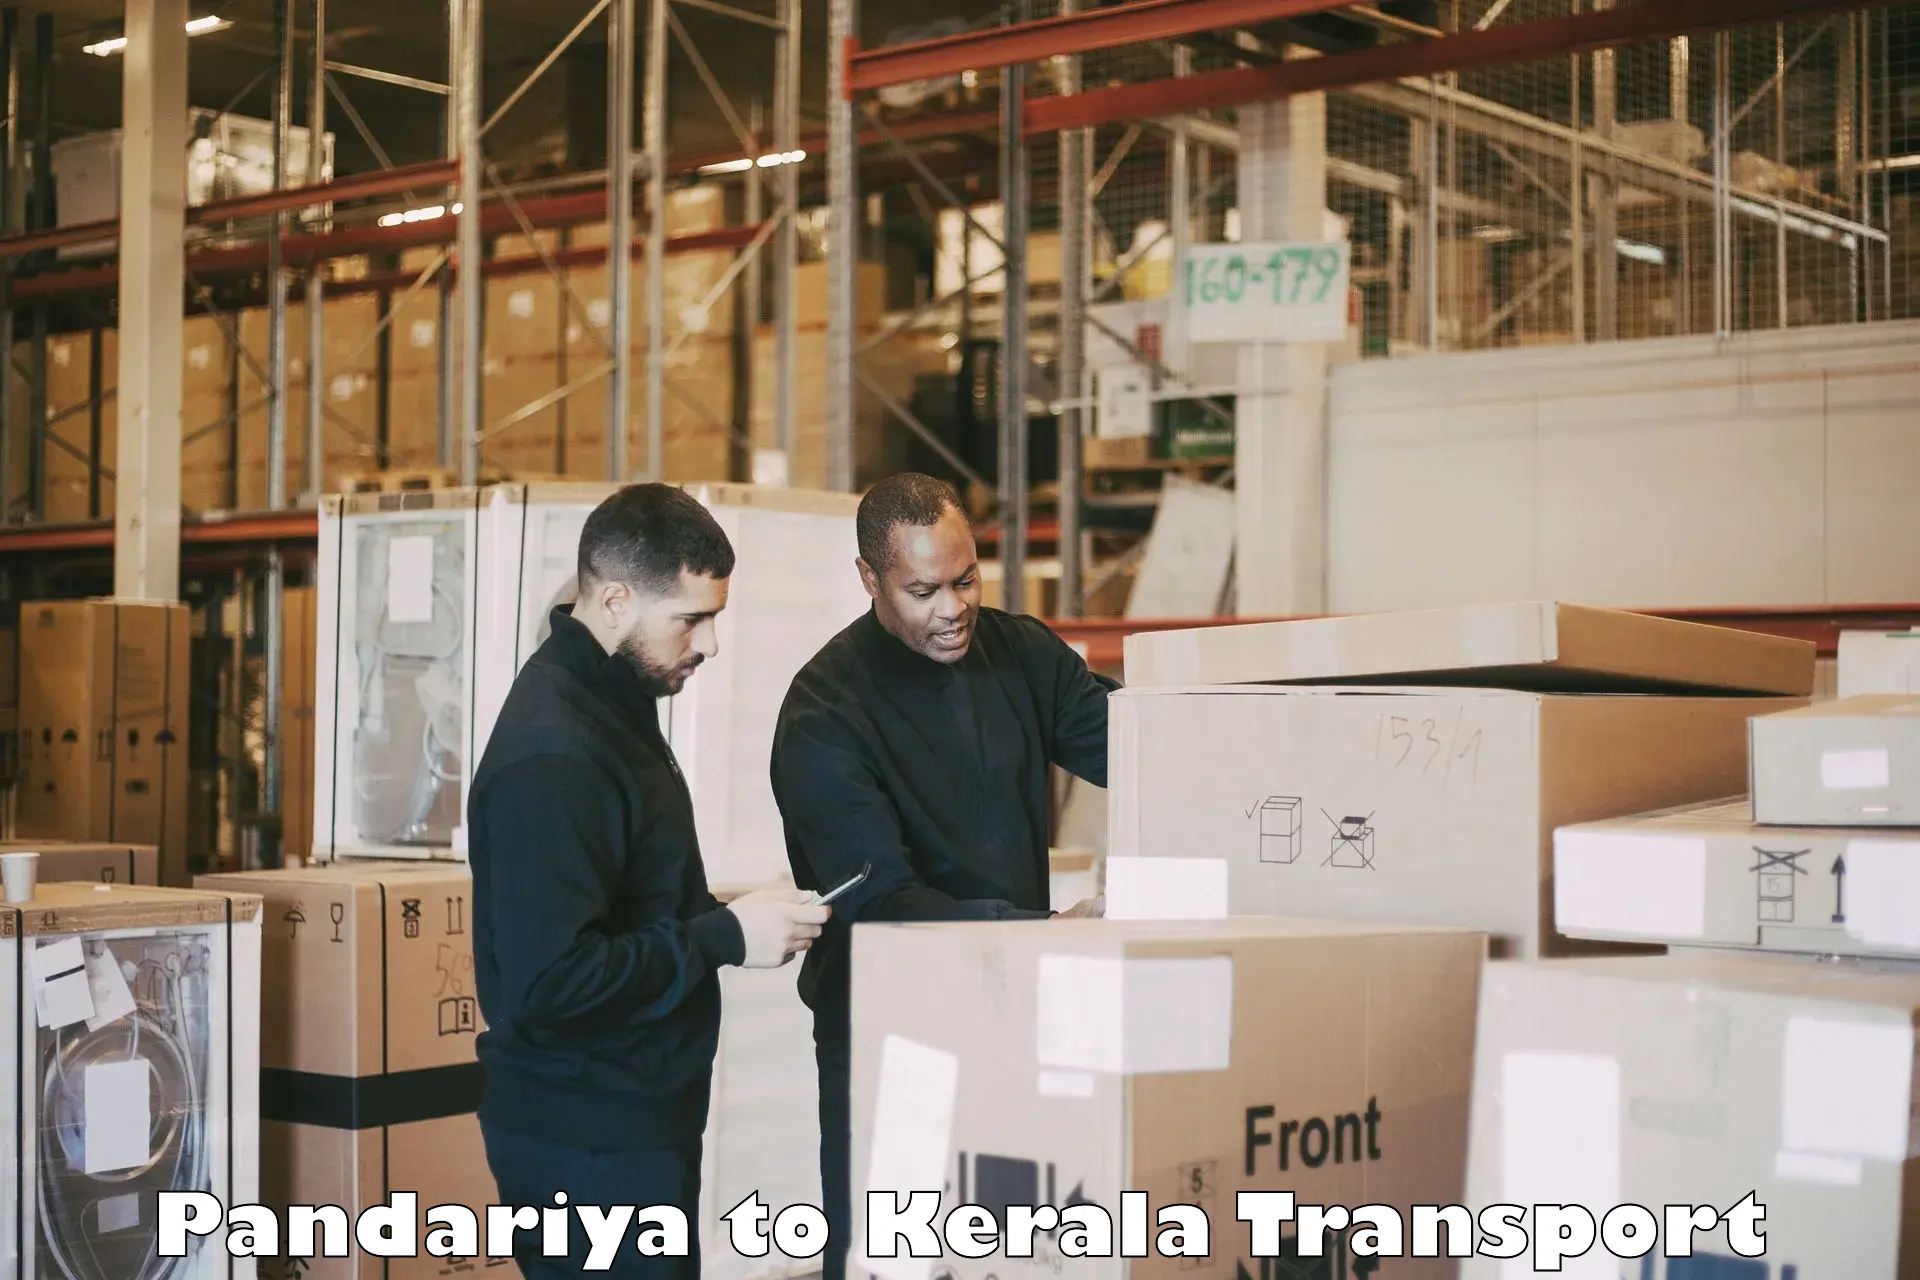 Container transport service Pandariya to Kakkayam